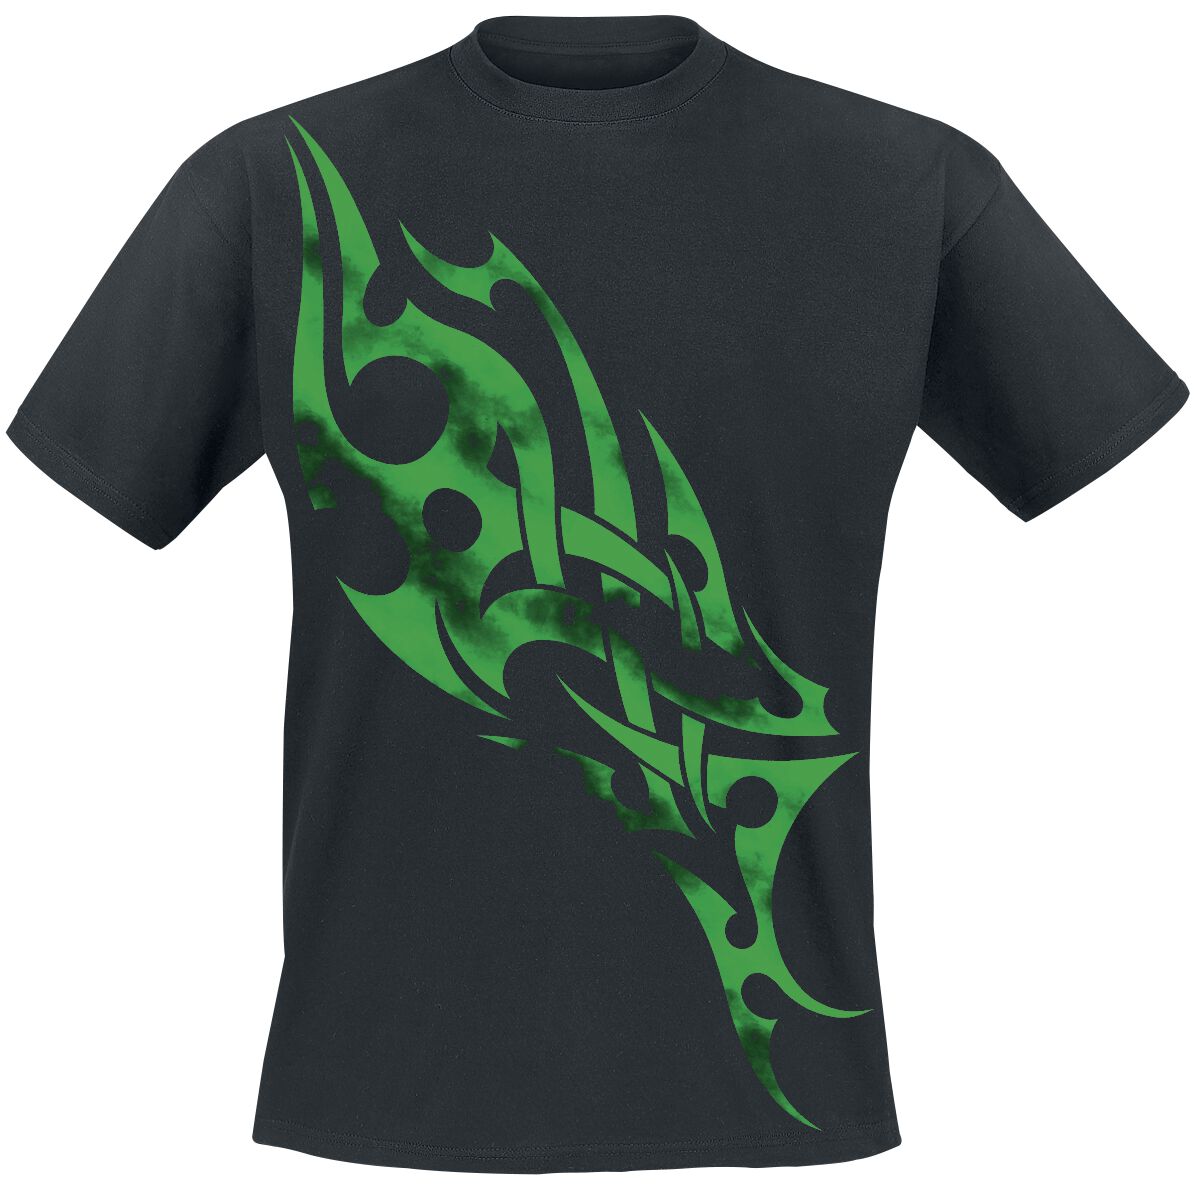 Green Smoky Tribal  T-Shirt black